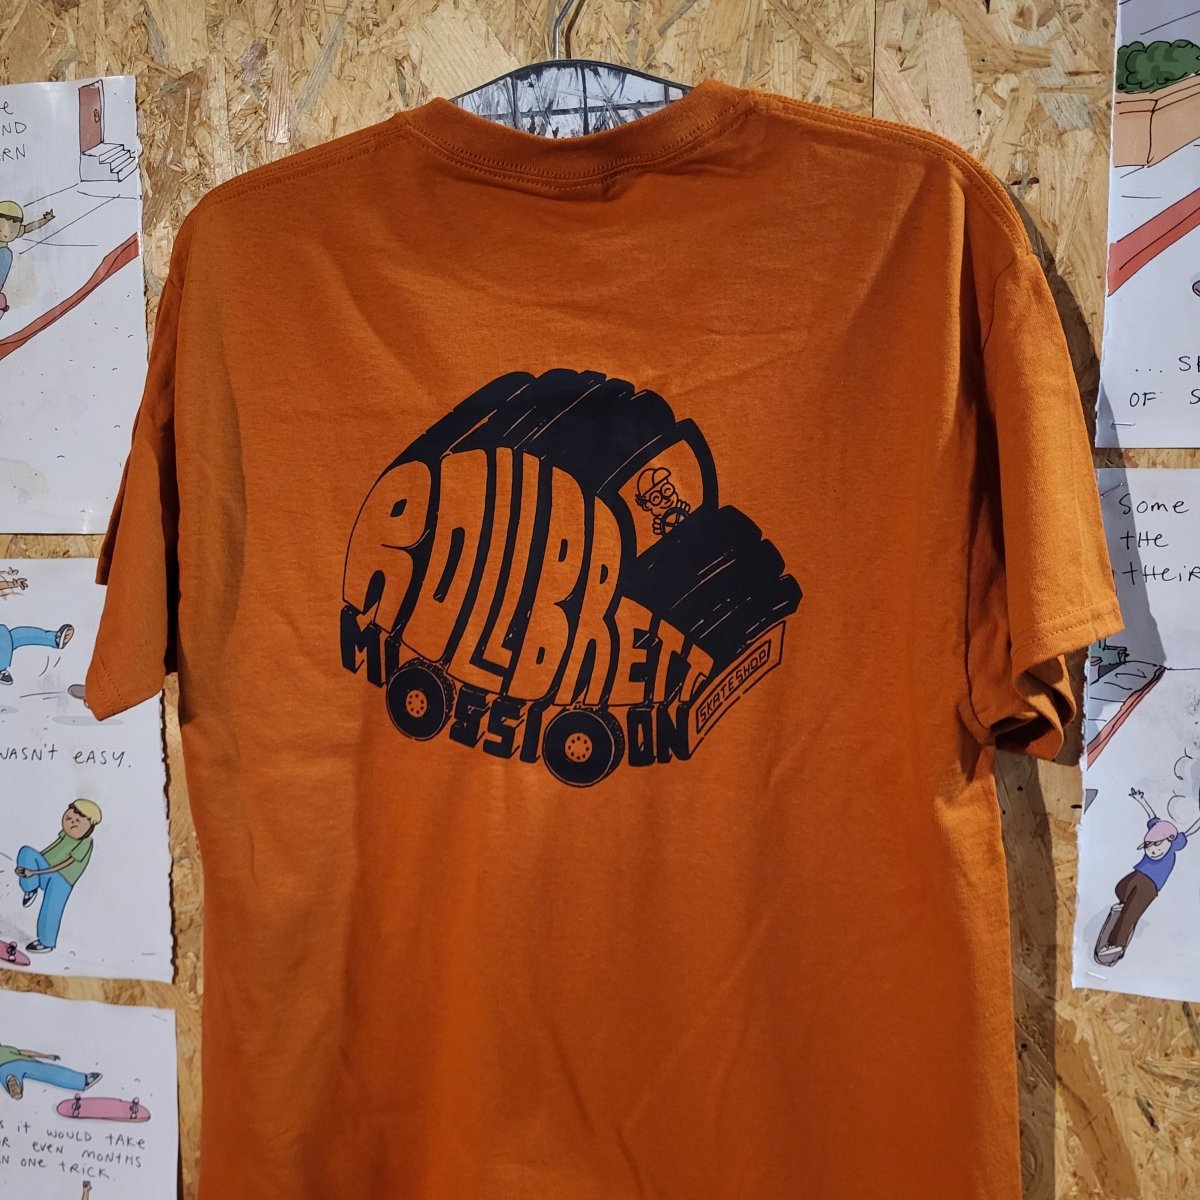 Rollbrett Mission Gabbo Mobil T-Shirt texas orange - Shirts & Tops - Rollbrett Mission